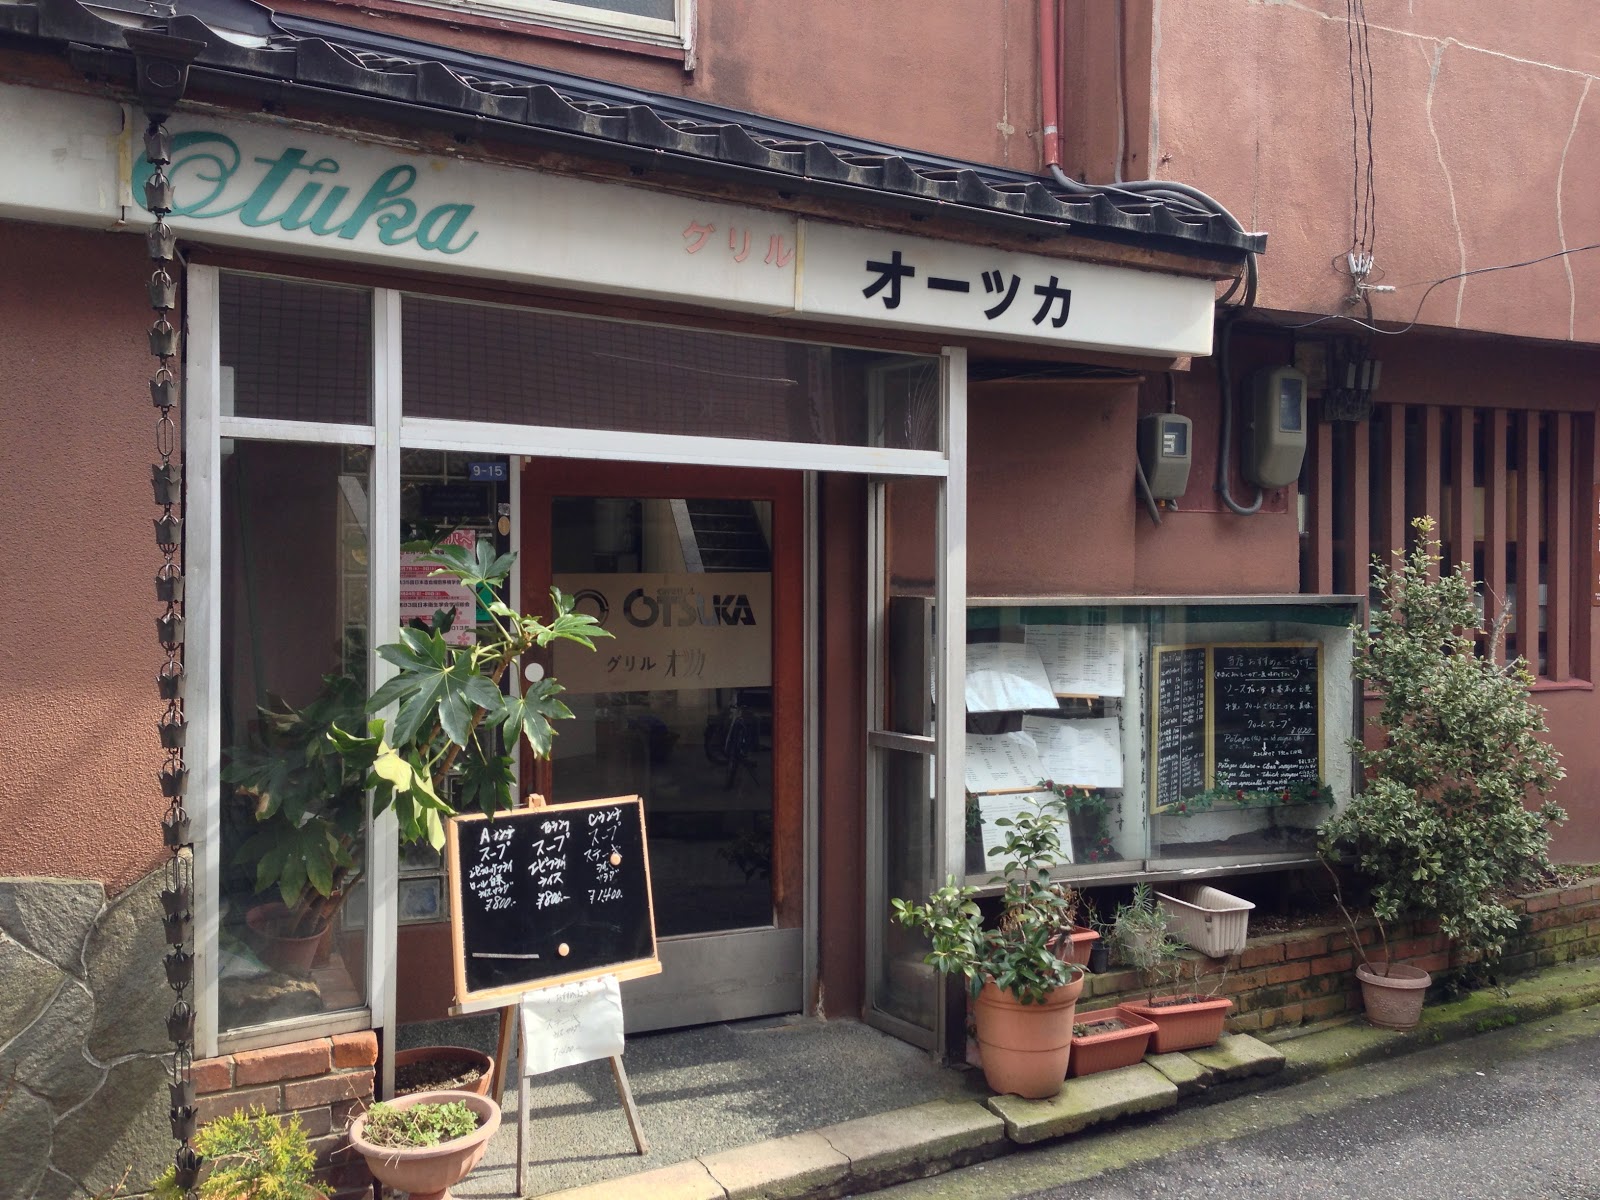 探検 発見 石川県mapの詳細ブログ 金沢の洋食店でグリルオーツカは抑えておかねばならないナイス